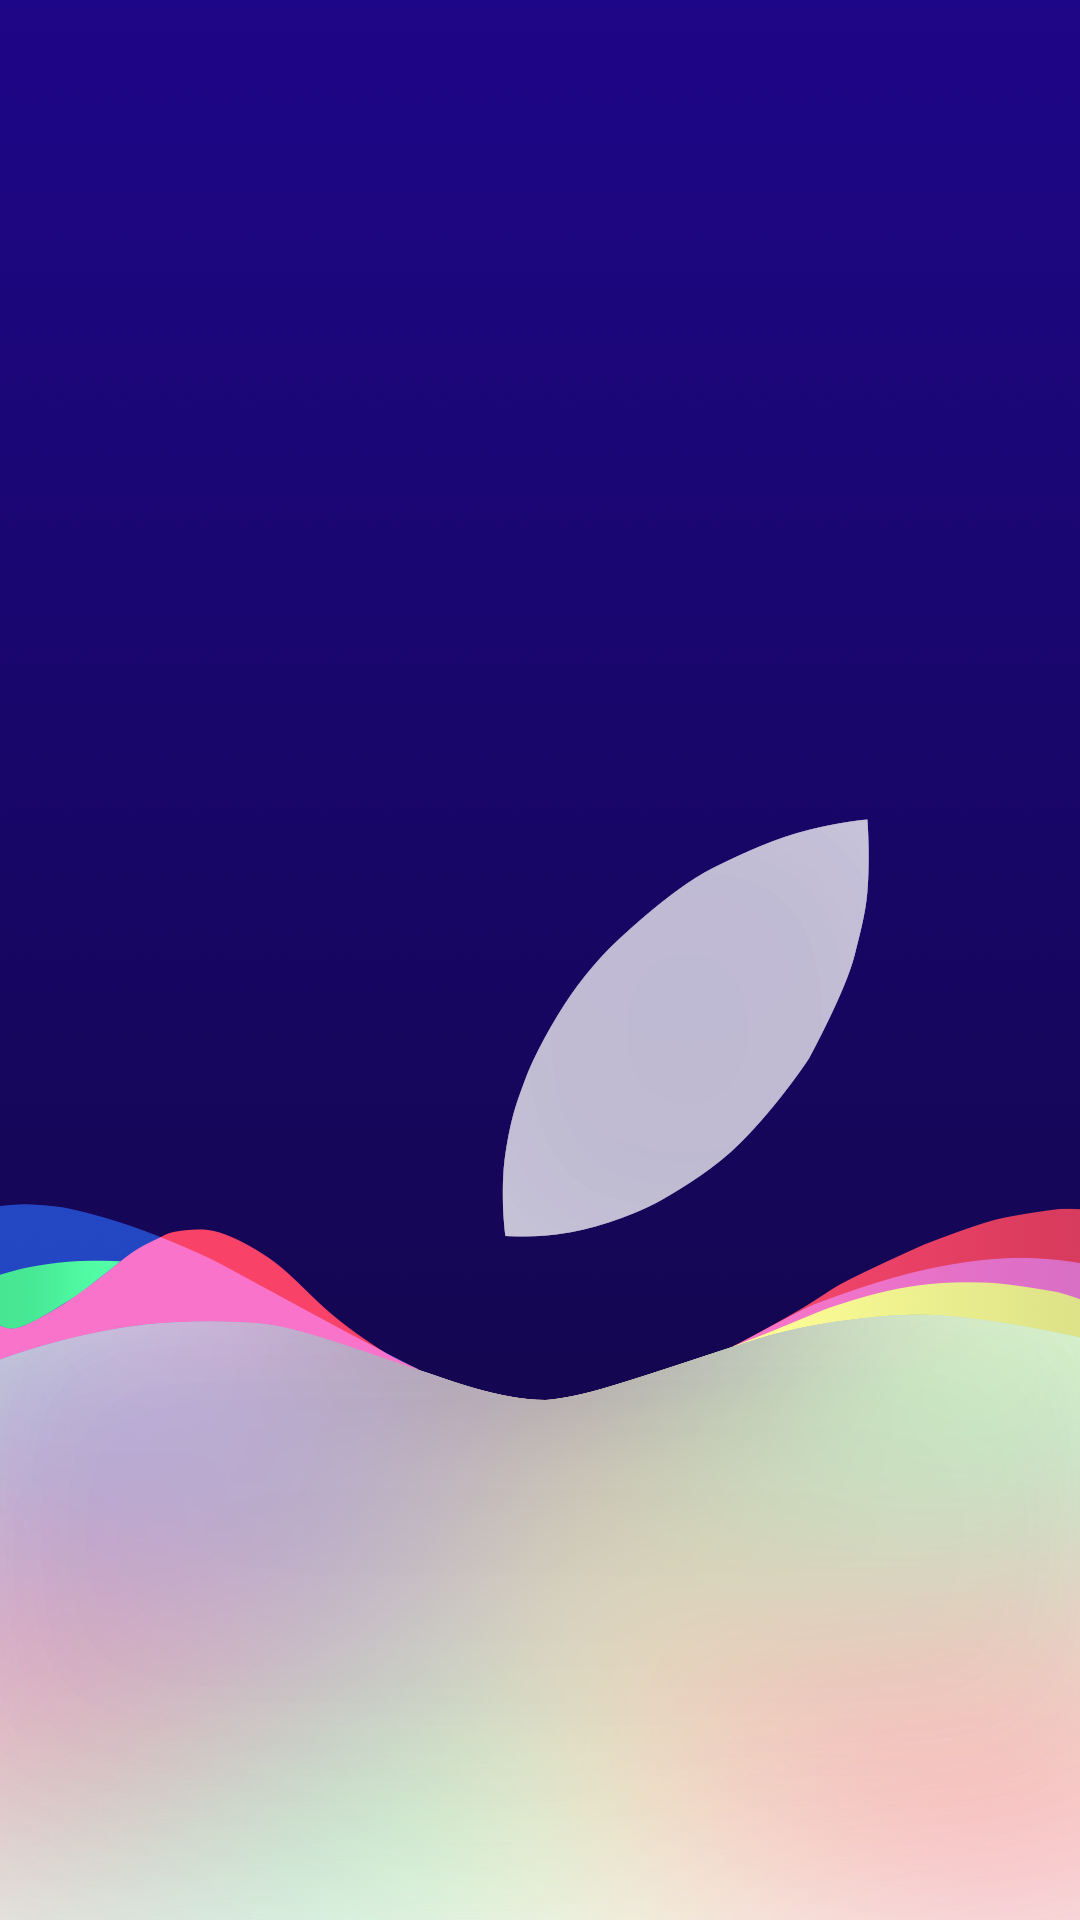 Apple-Event-September-9-Wallpaper-stijn_d3sign-opacity-full